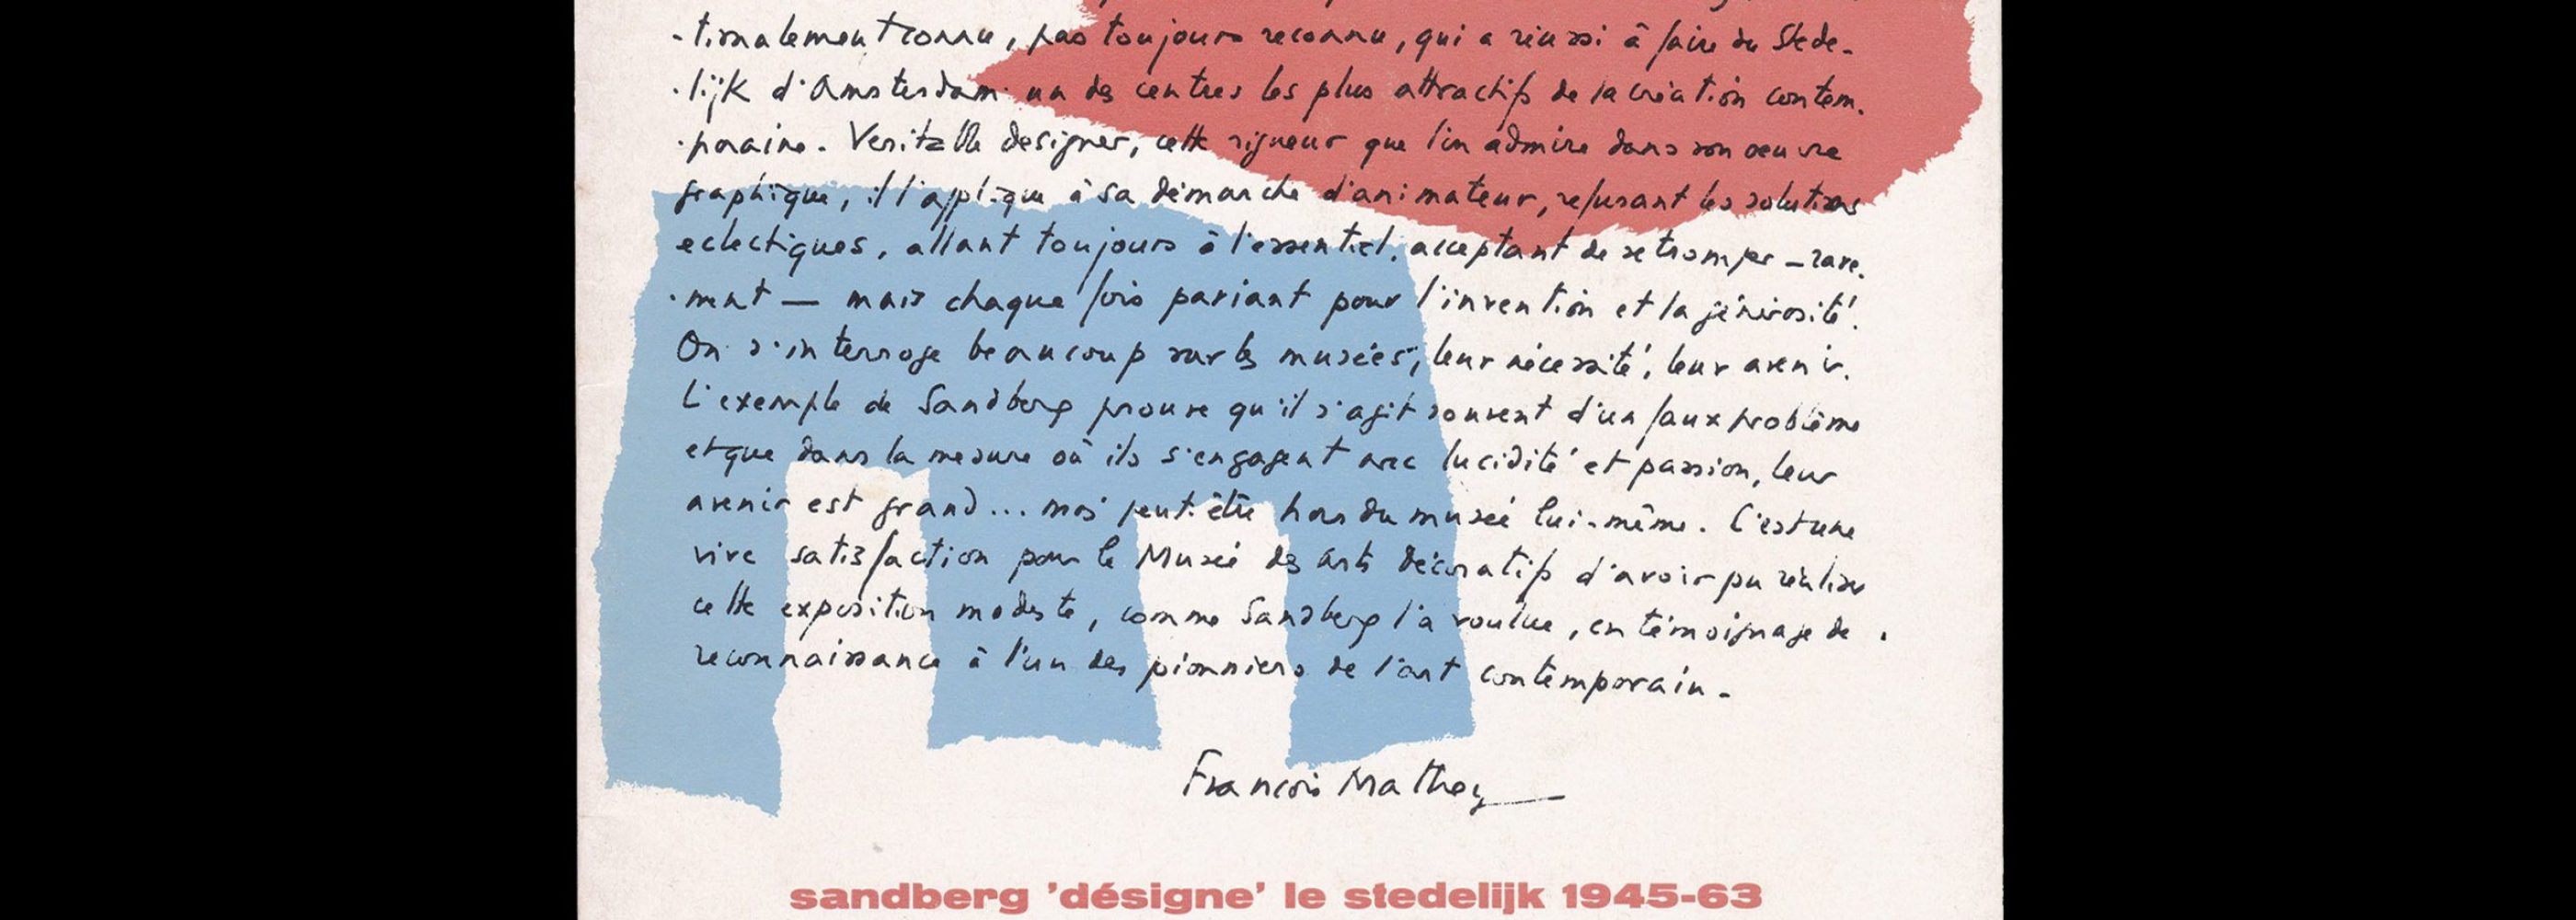 Sandberg 'désigne' le stedelijk 1945-63, Paris : Musée des arts décoratifs, 1973